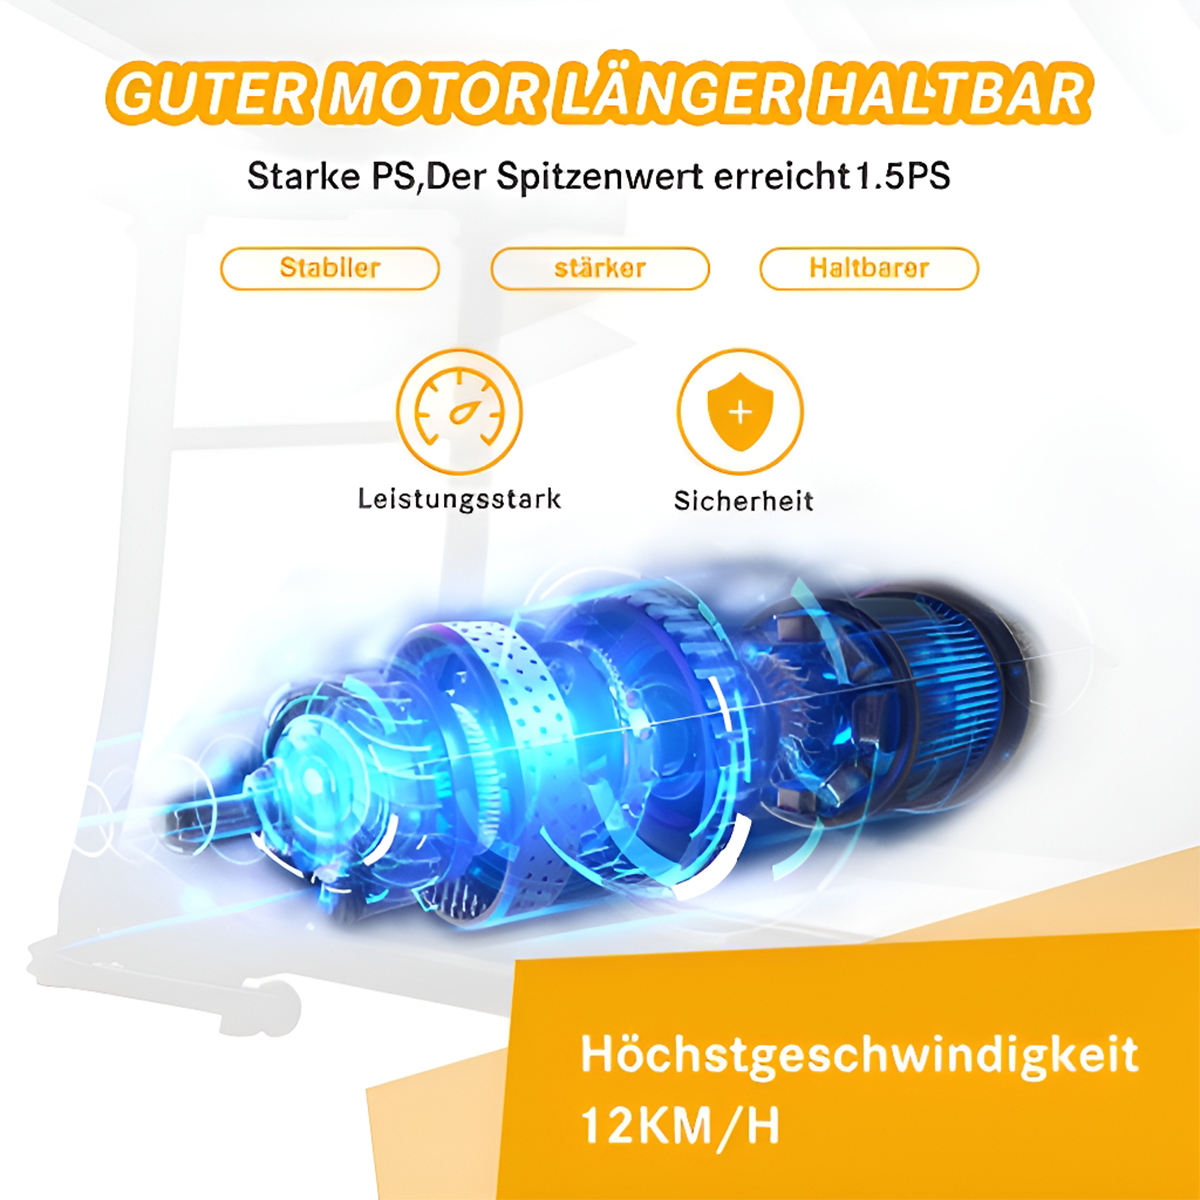 LED-Anzeige APP klappbare Laufband, Geschwindigkeitsstufe Bluetooth-Konnektivität Indoor-Laufband BRIGHTAKE Schwarz